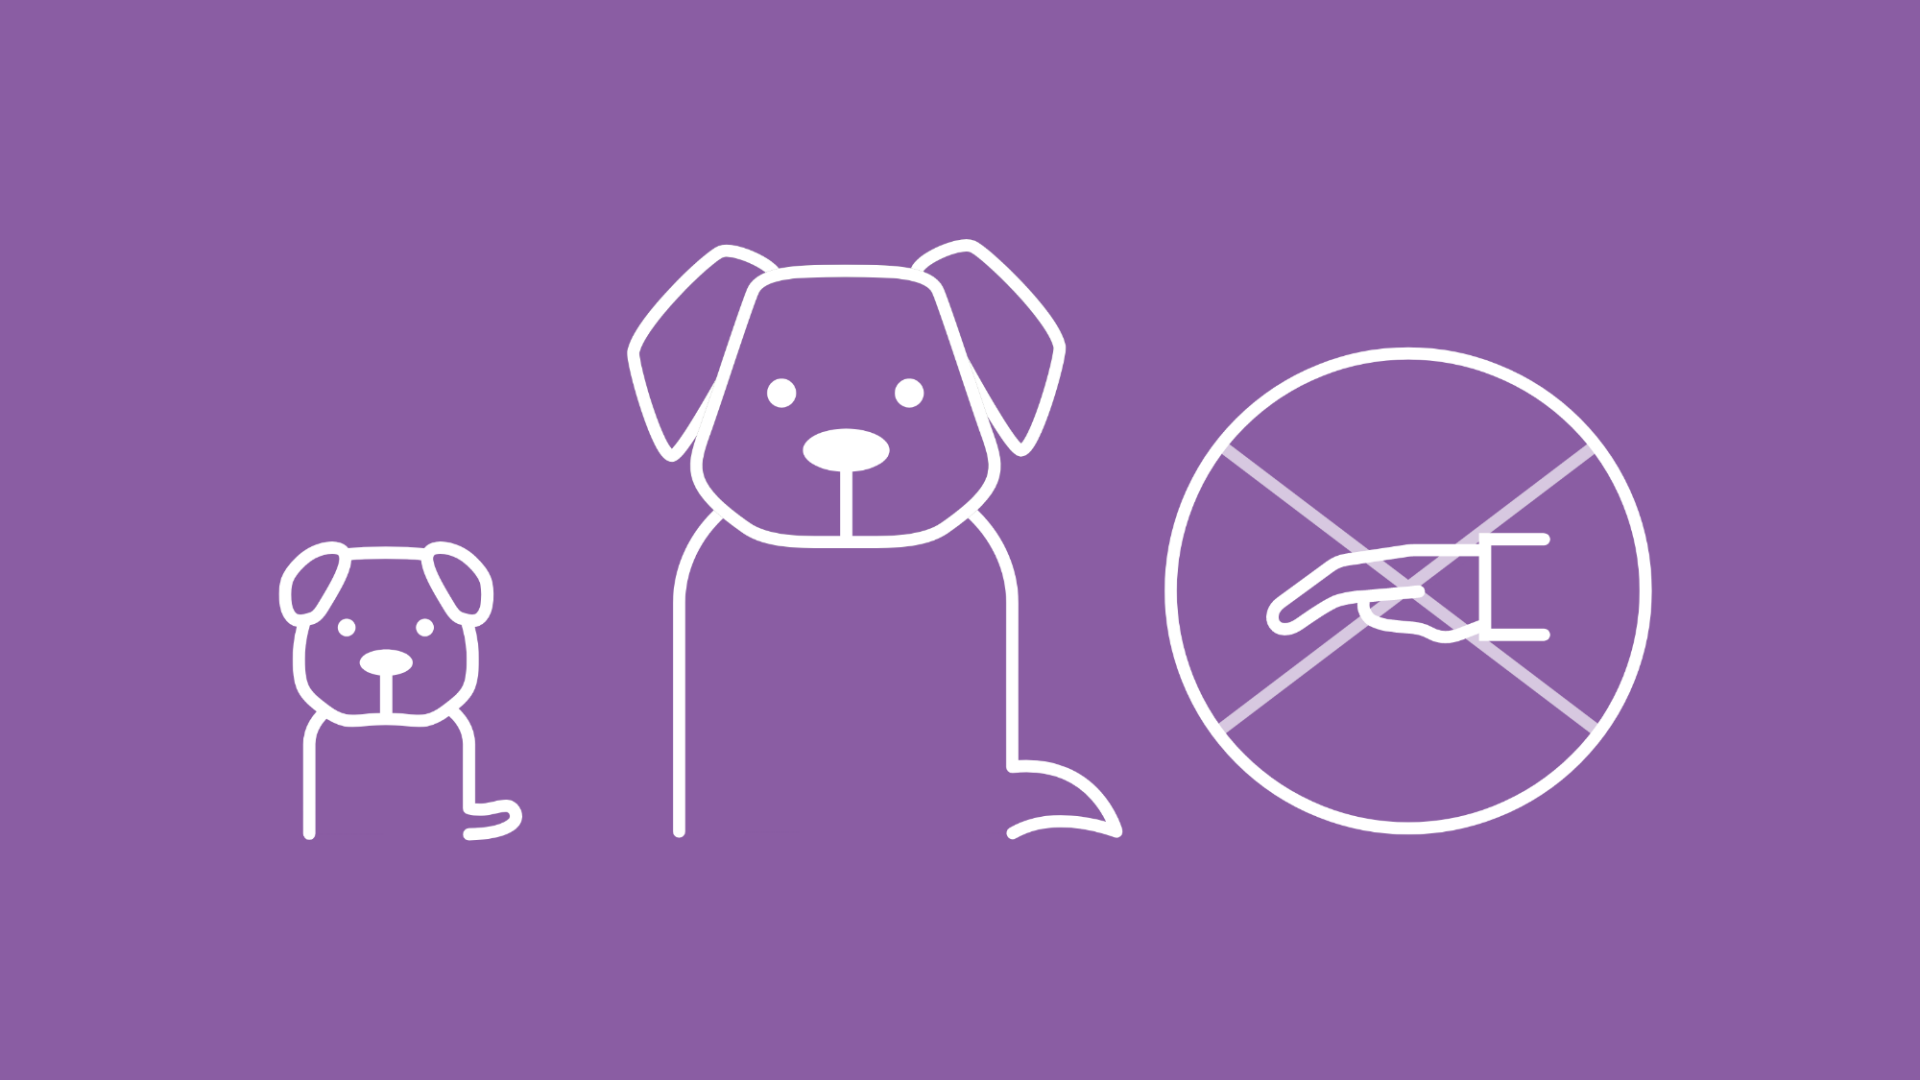 Die Grafik zeigt einen Welpen, einen erwachsenen Hund und eine Hand, die ein Verbot signalisiert.